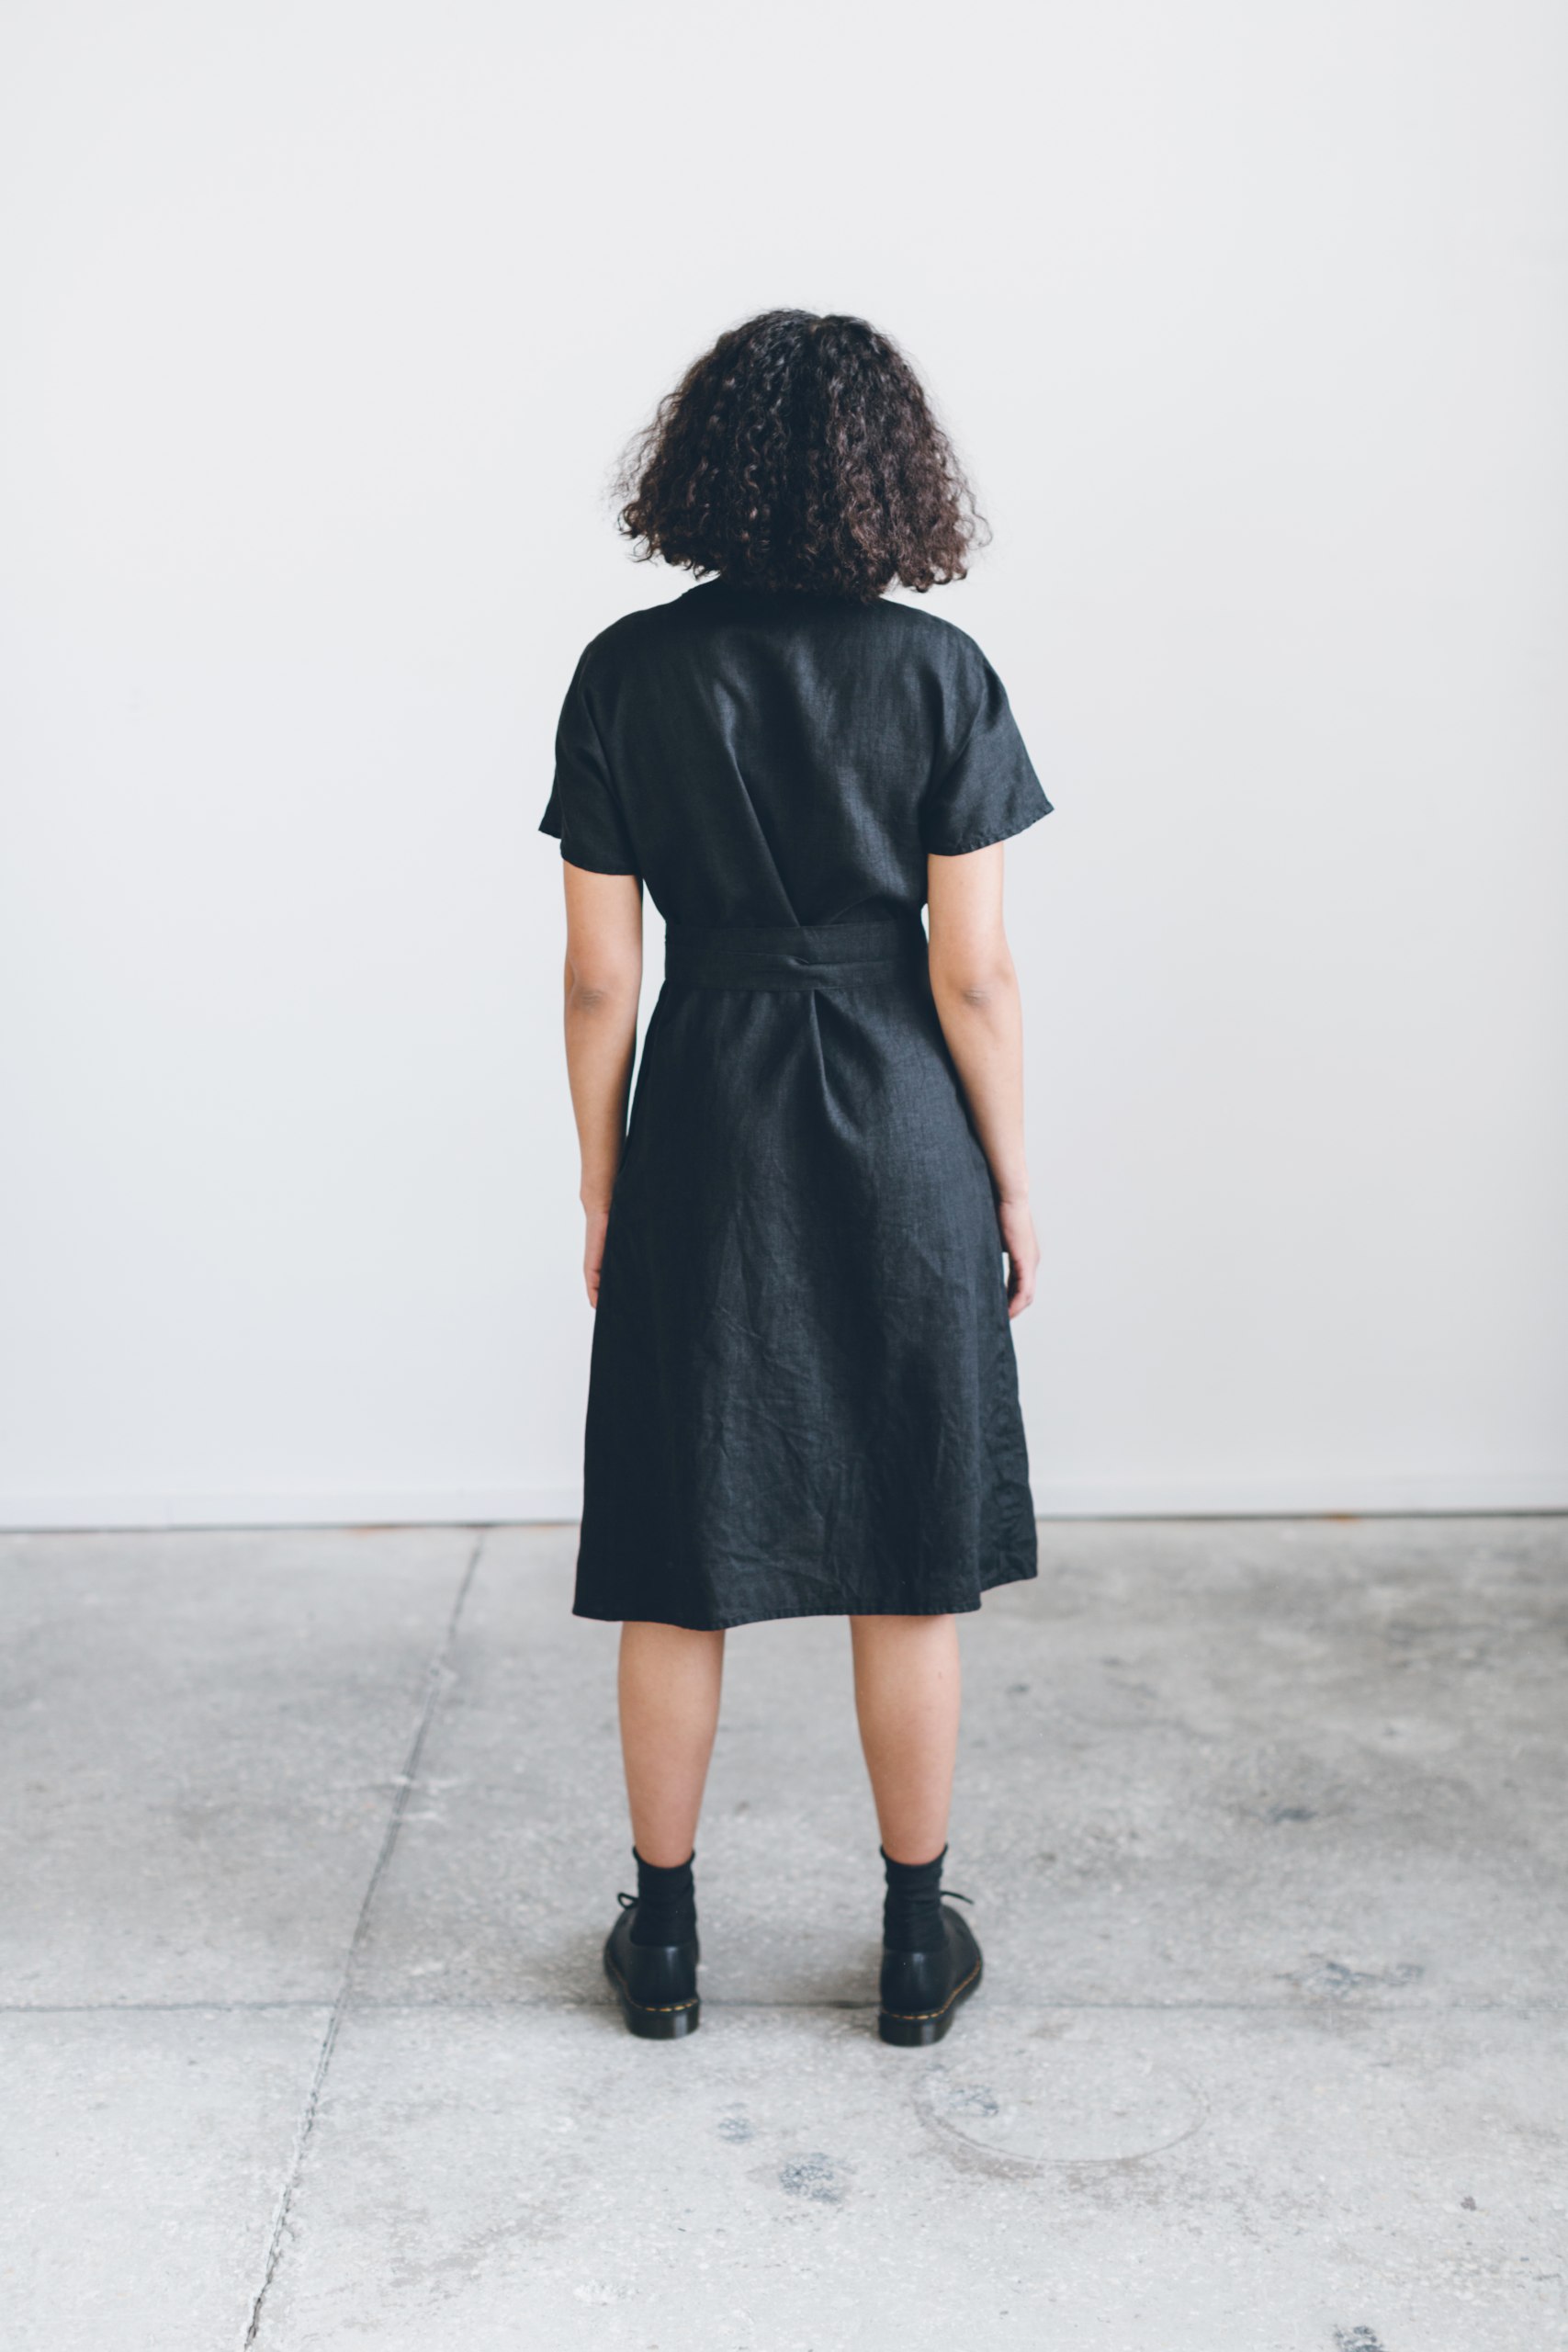 The back of black linen dress